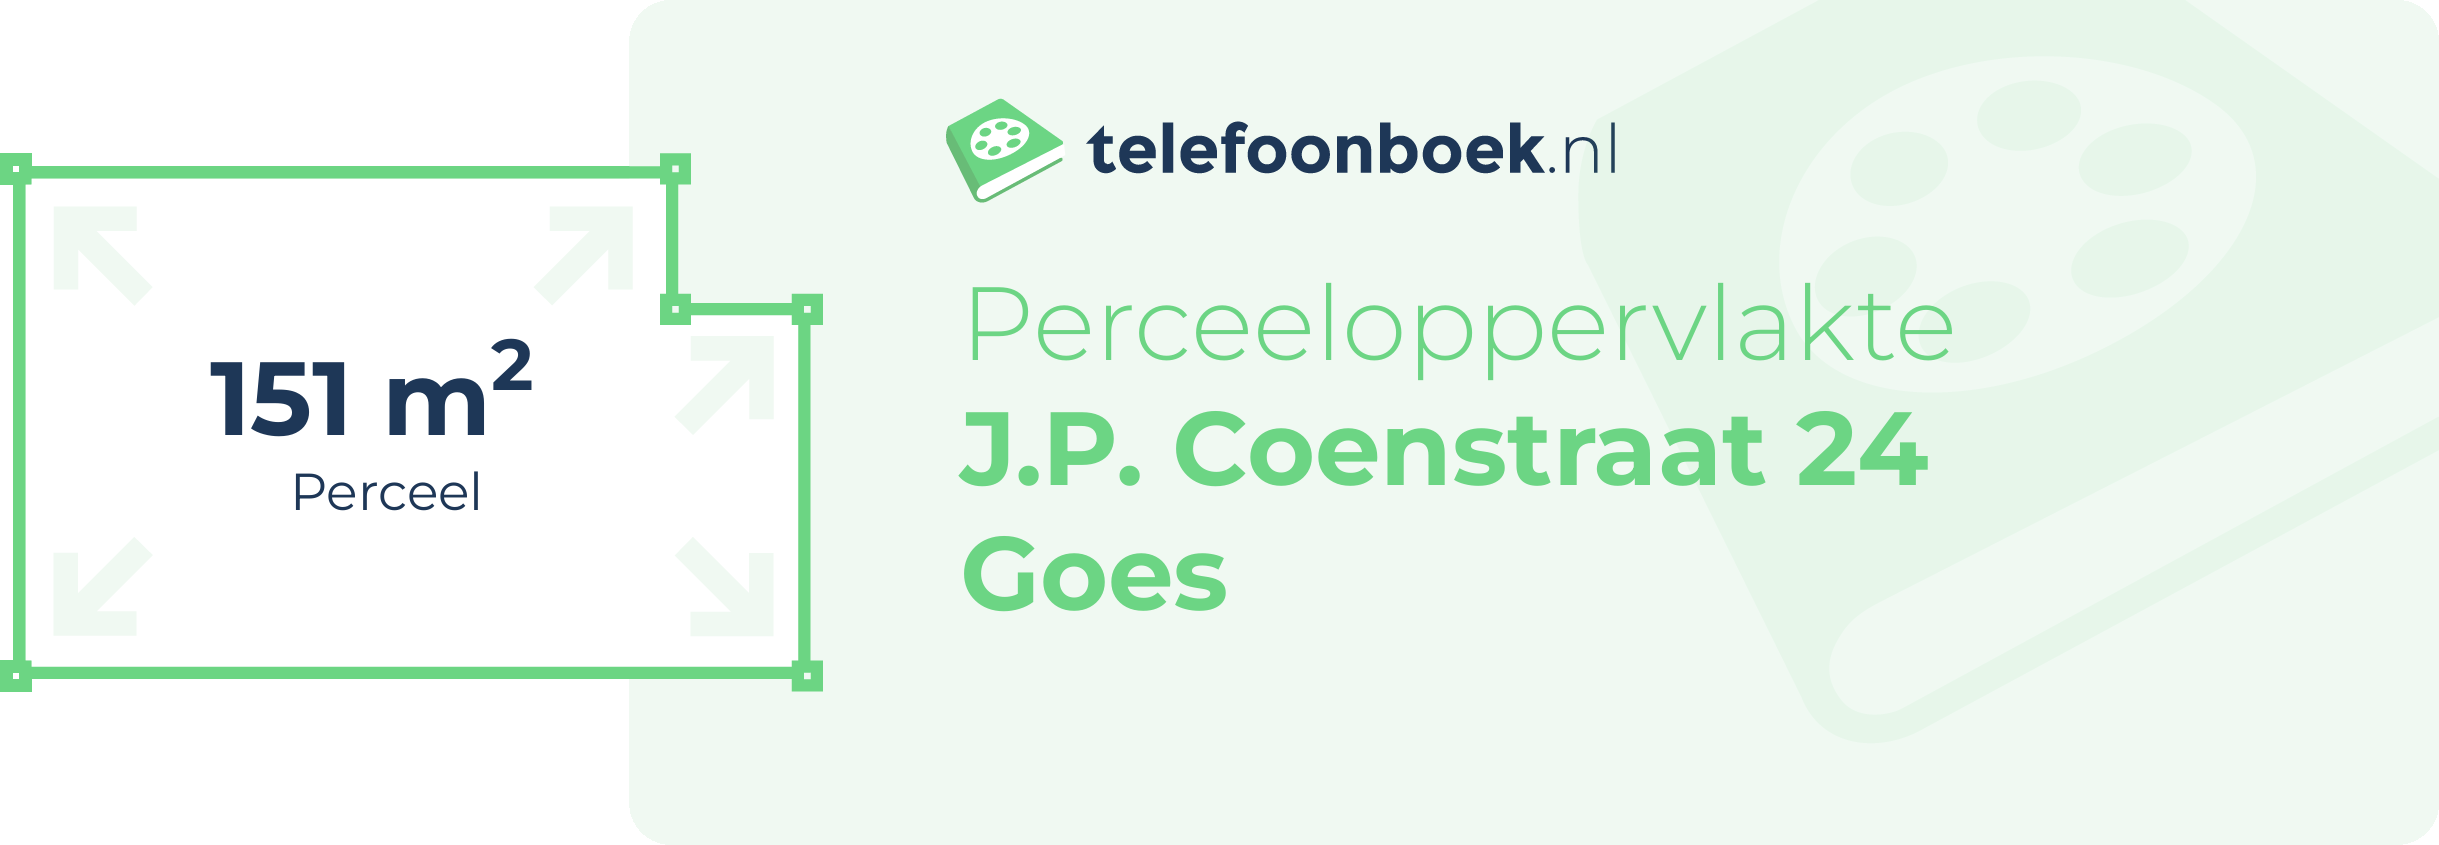 Perceeloppervlakte J.P. Coenstraat 24 Goes